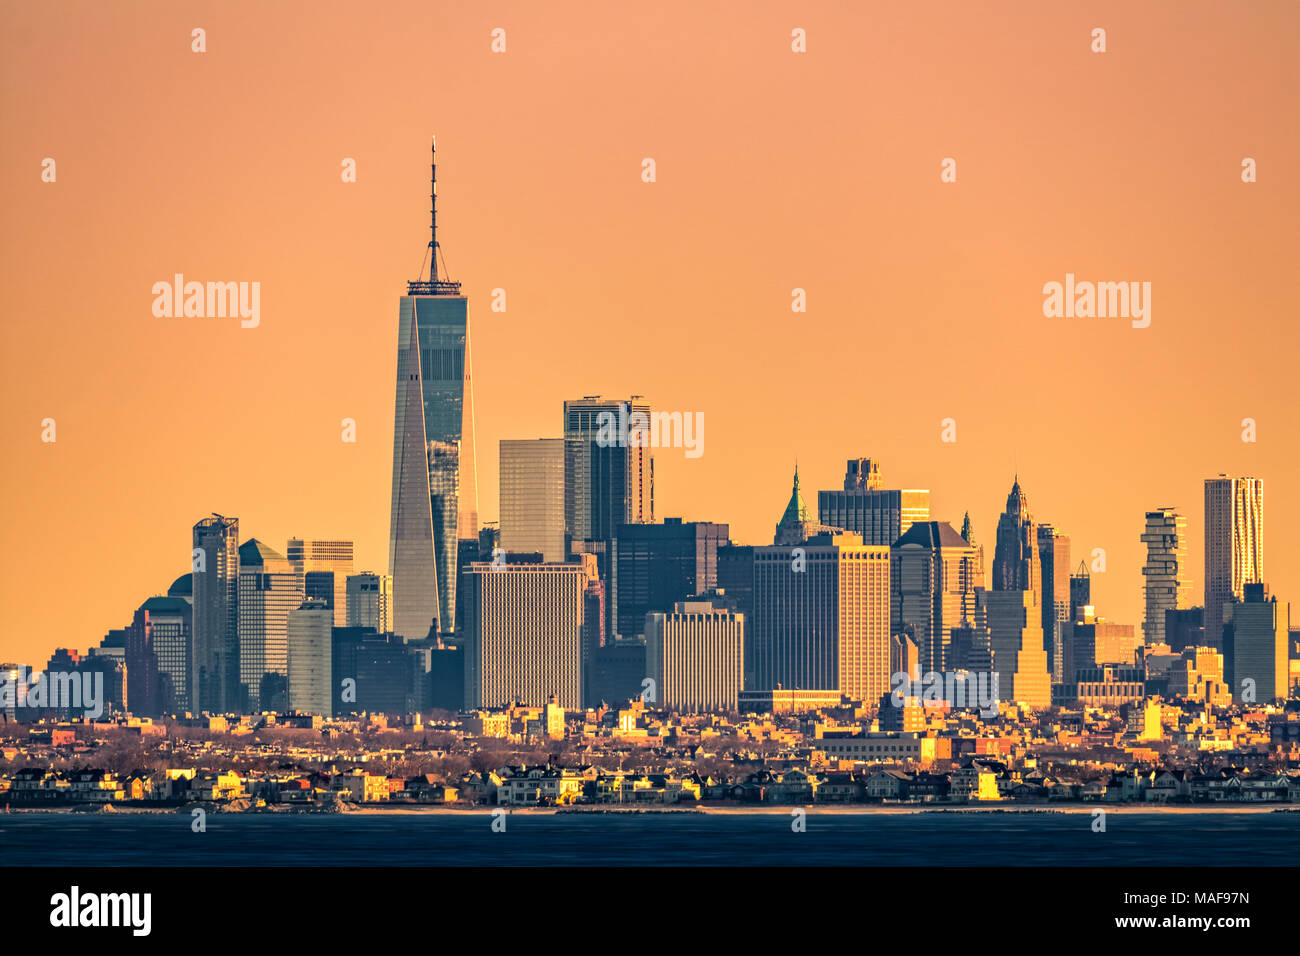 Les tours de New York skyline avec Brooklyn borough de faible hauteur à l'avant-plan, comme vu au lever du soleil, de Sandy Hook (New Jersey). Banque D'Images